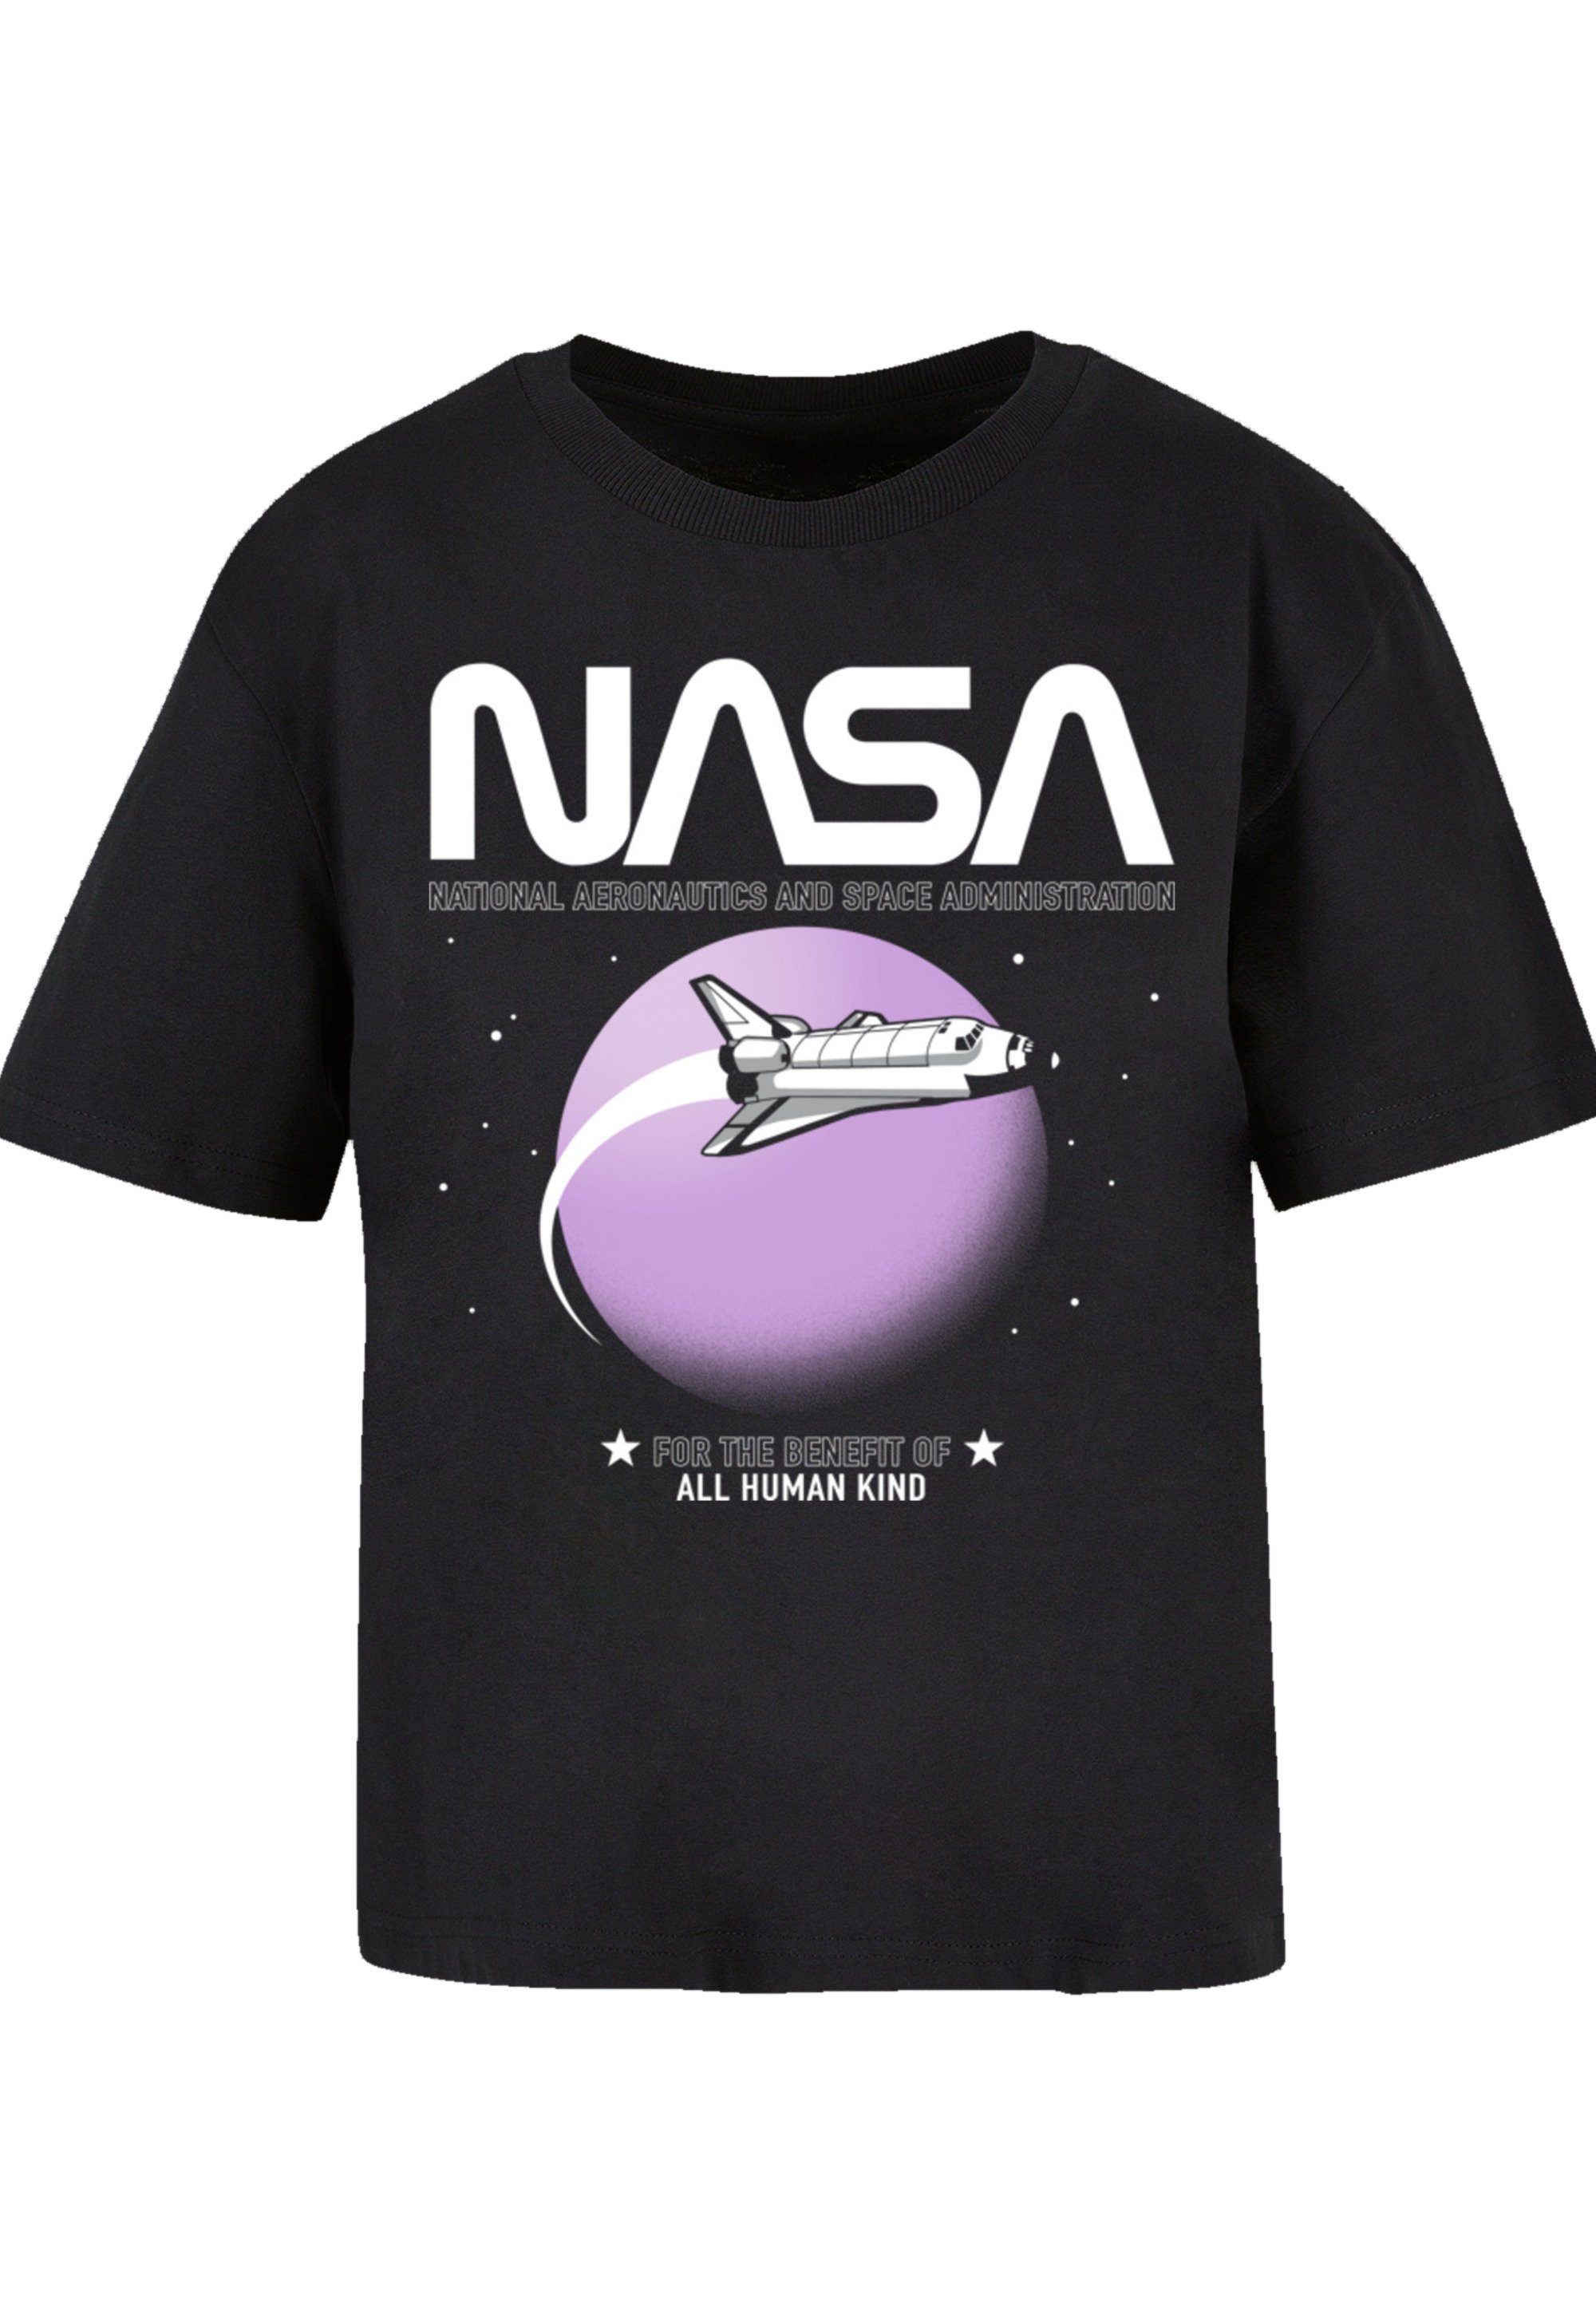 F4NT4STIC T-Shirt NASA Größe eine kleiner aus, bitte bestellen Print, Shuttle weit Fällt Orbit